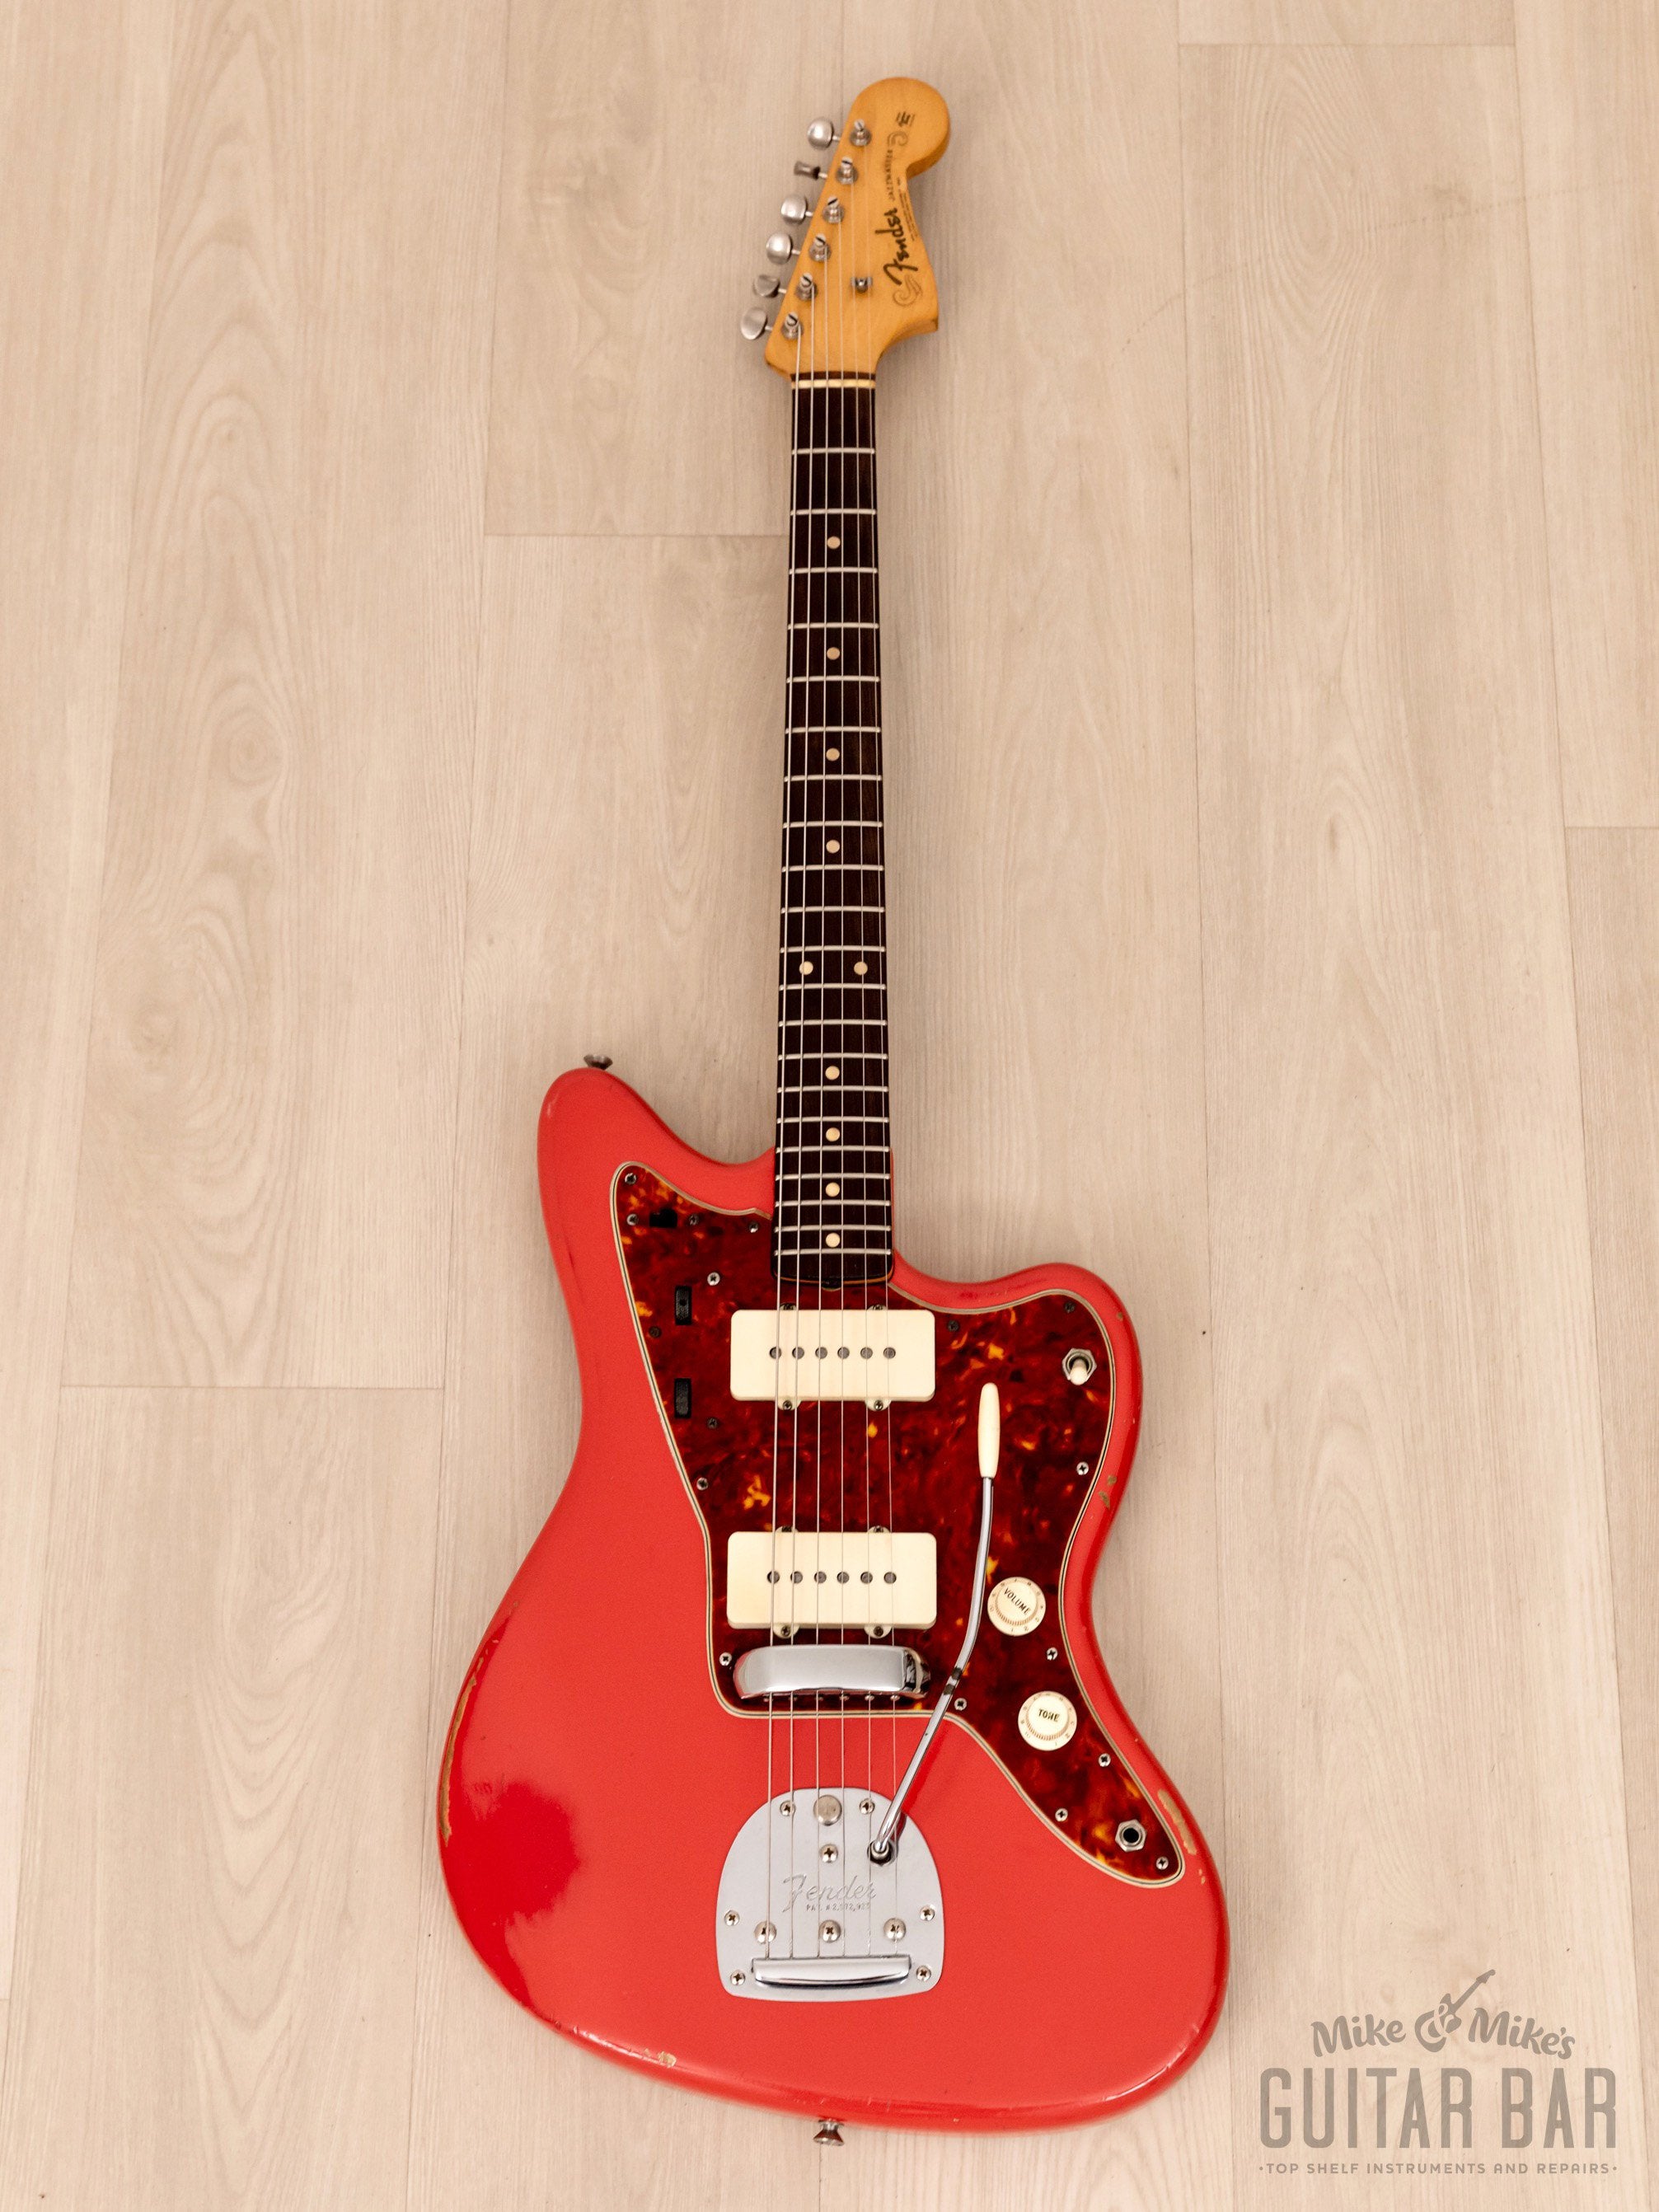 1962 Fender Jazzmaster Vintage Pre-CBS Offset Guitar Fiesta Red, Slab Board w/ Case